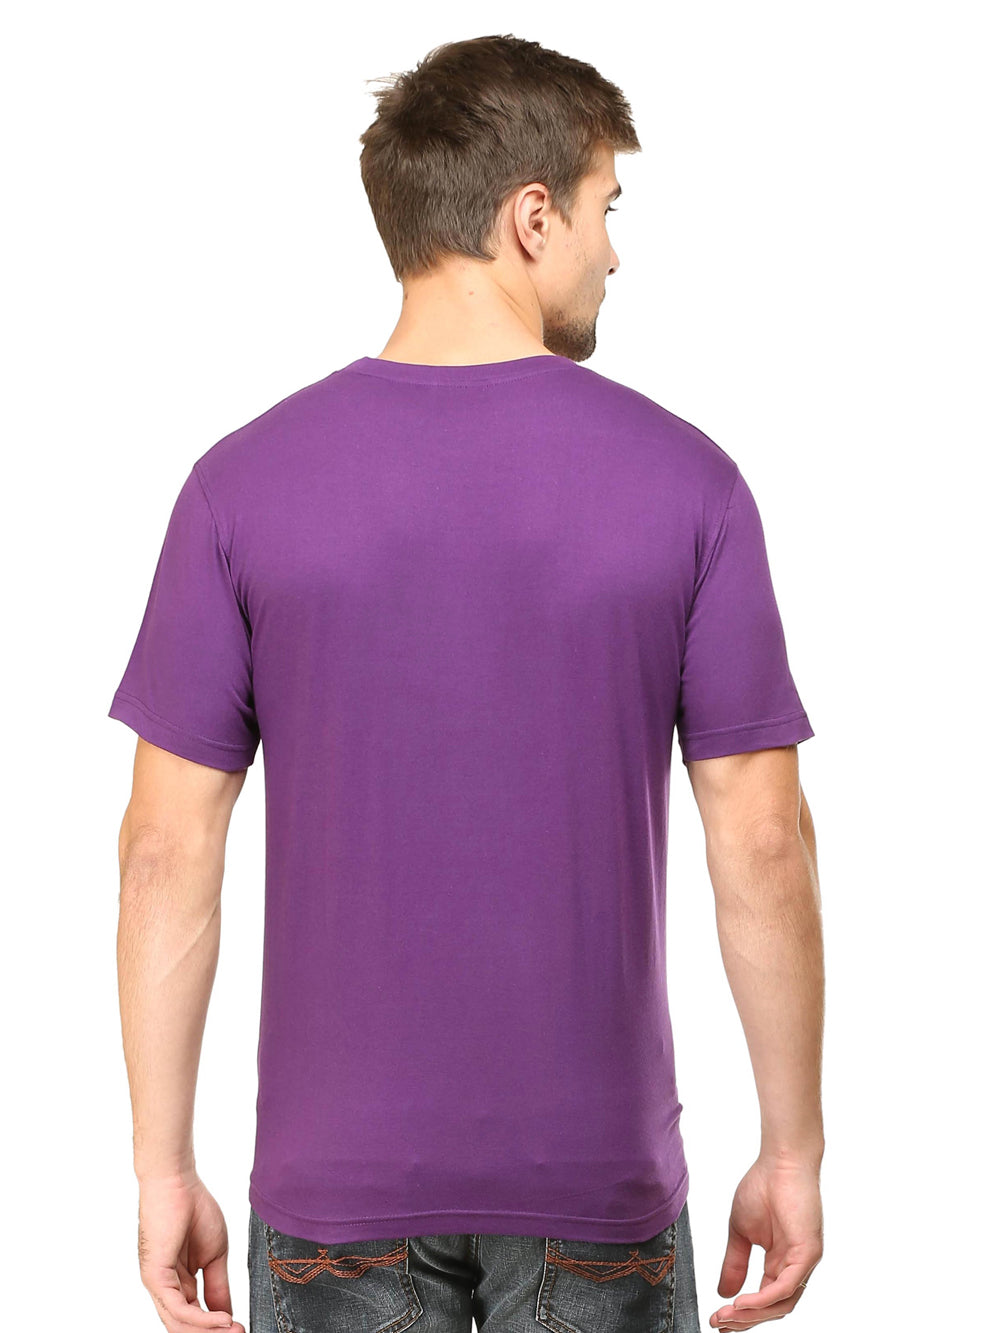 Solids : Premium Purple Unisex T -shirt